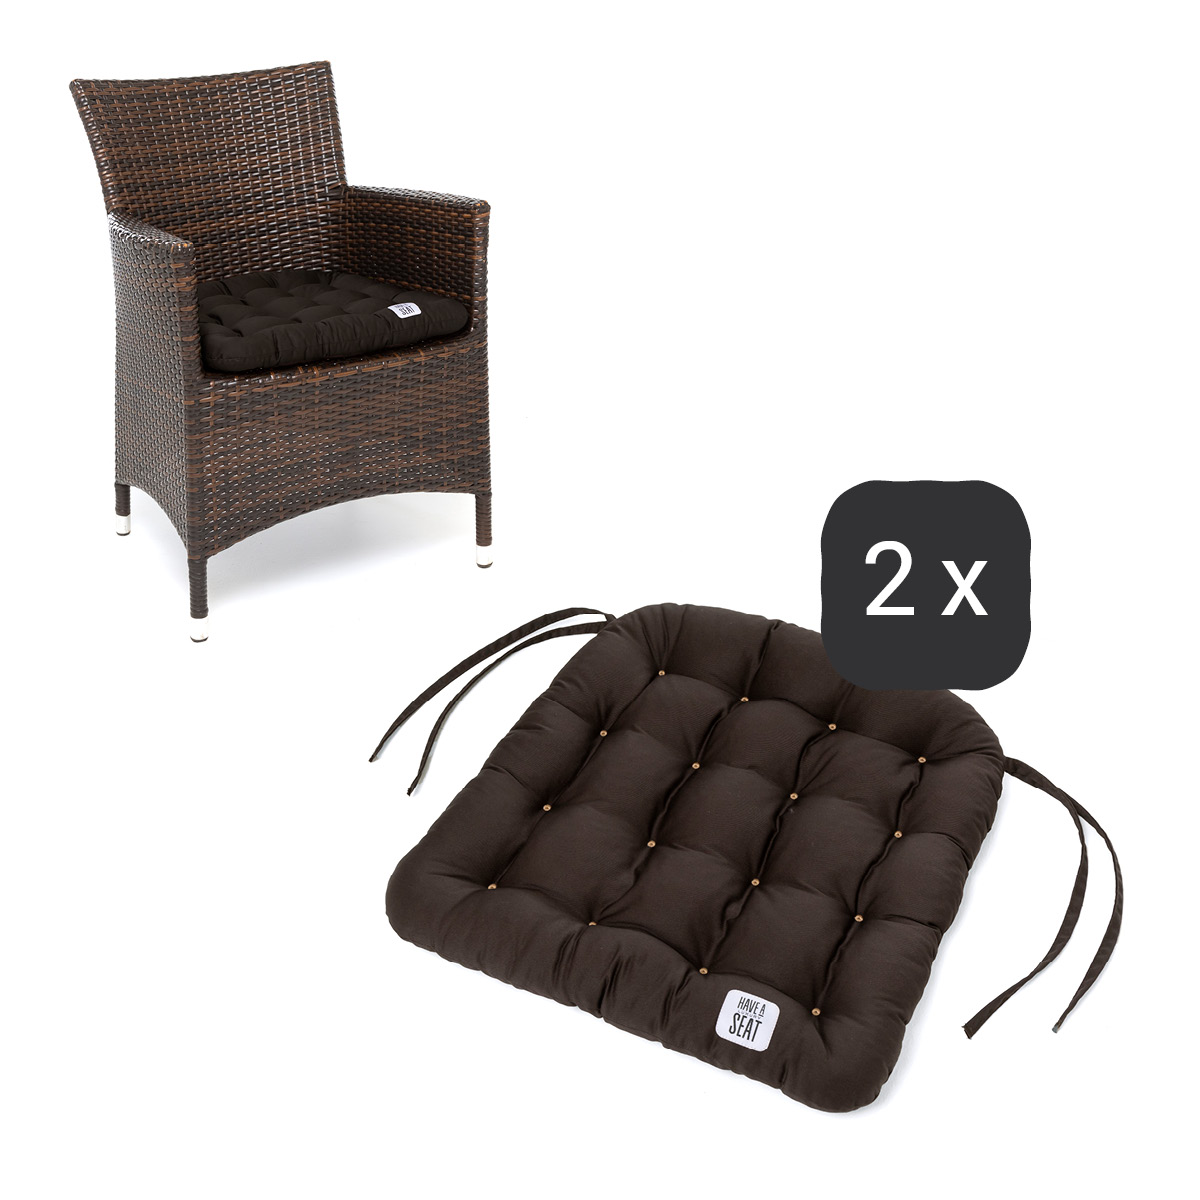 Sitzkissen für Rattanstühle 48x46 cm | Braun | 2er Set | Premium-Sitzkomfort | Indoor / Outdoor | waschbar bis 95°C | HAVE A SEAT Living